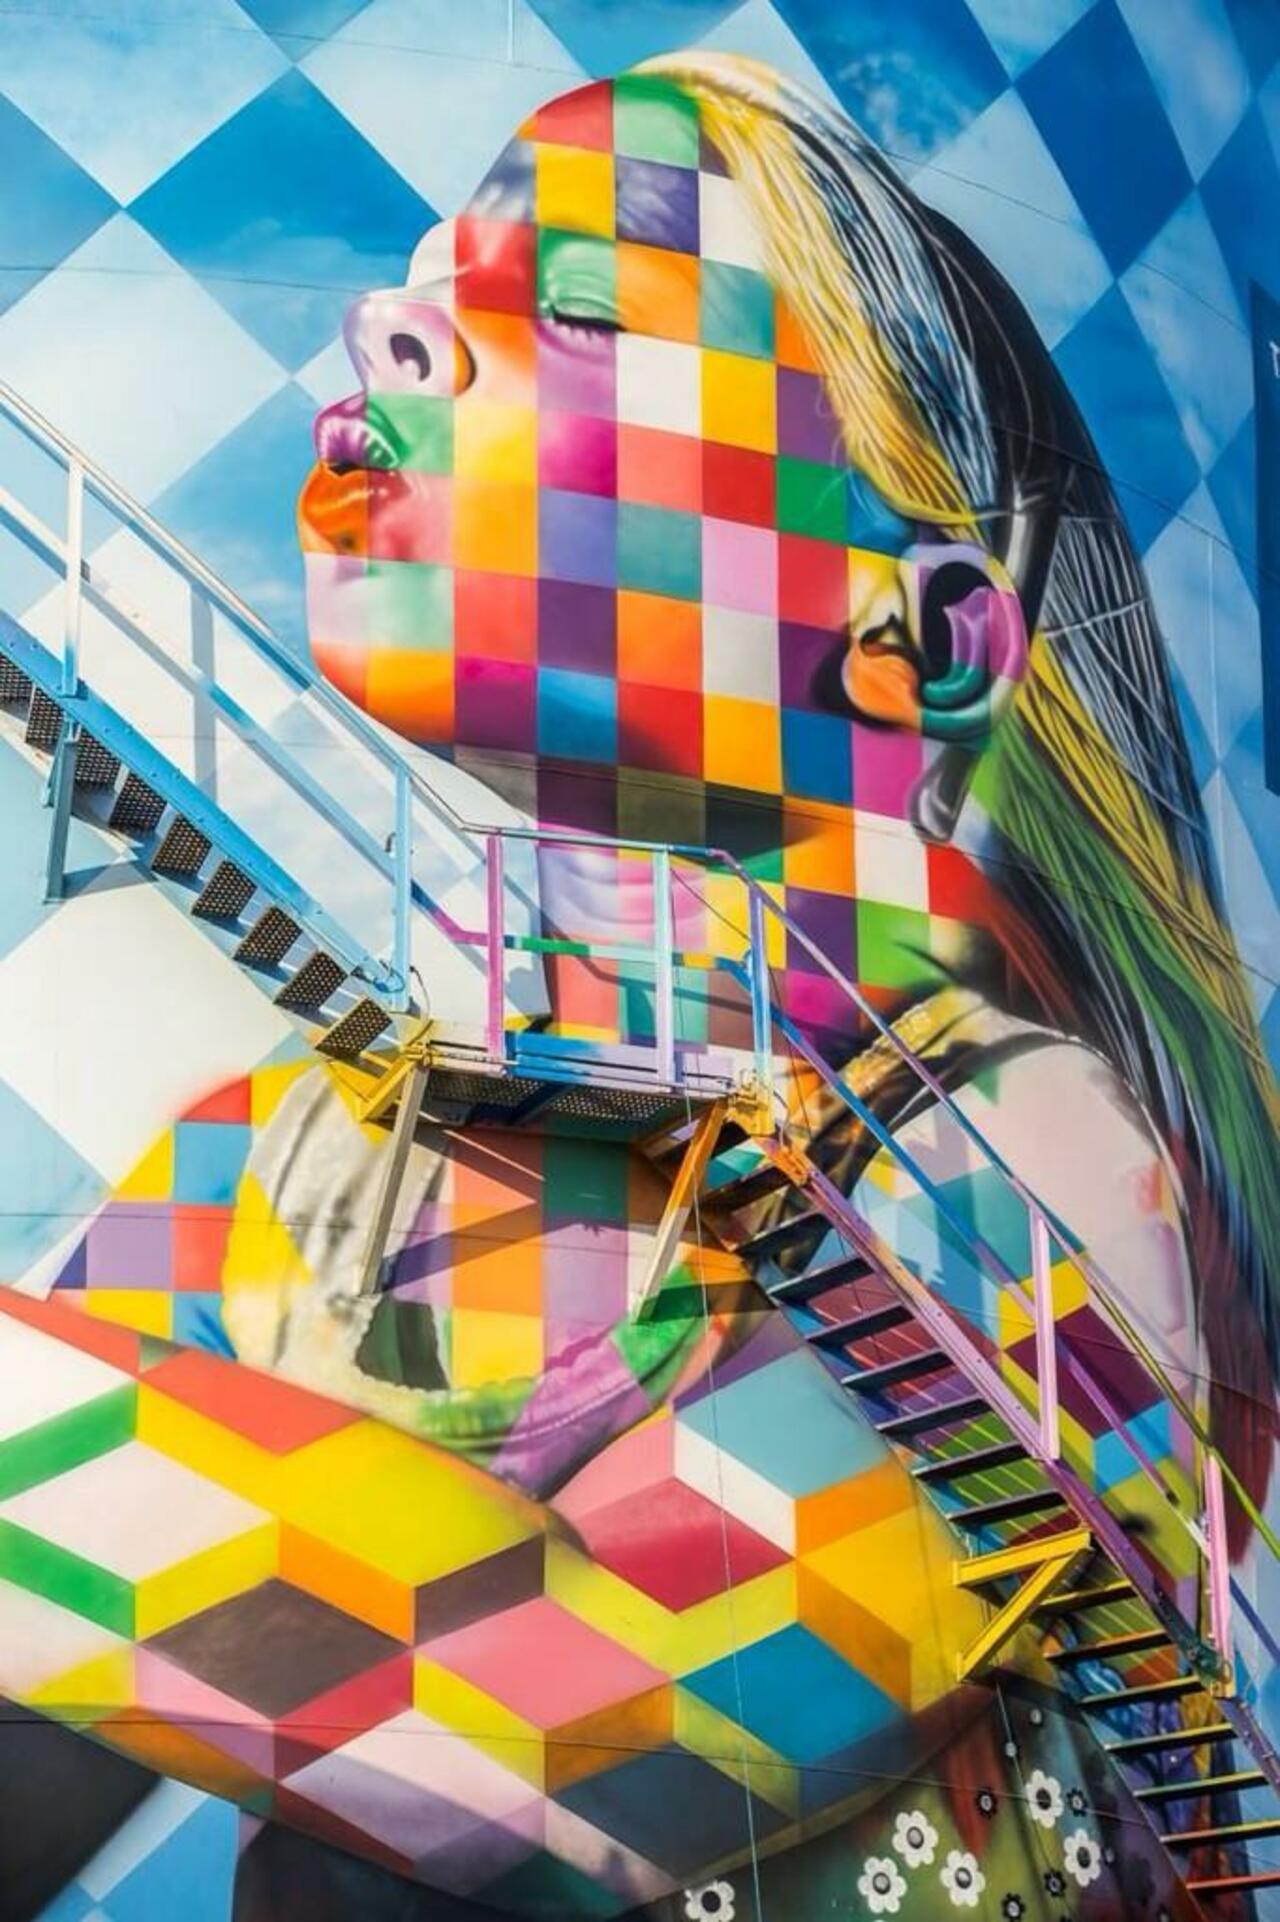 Artist Eduardo Kobra new stunning Street Art project located in Cubatão, Brazil #art #mural #graffiti #streetart http://t.co/71eF4jMyXG